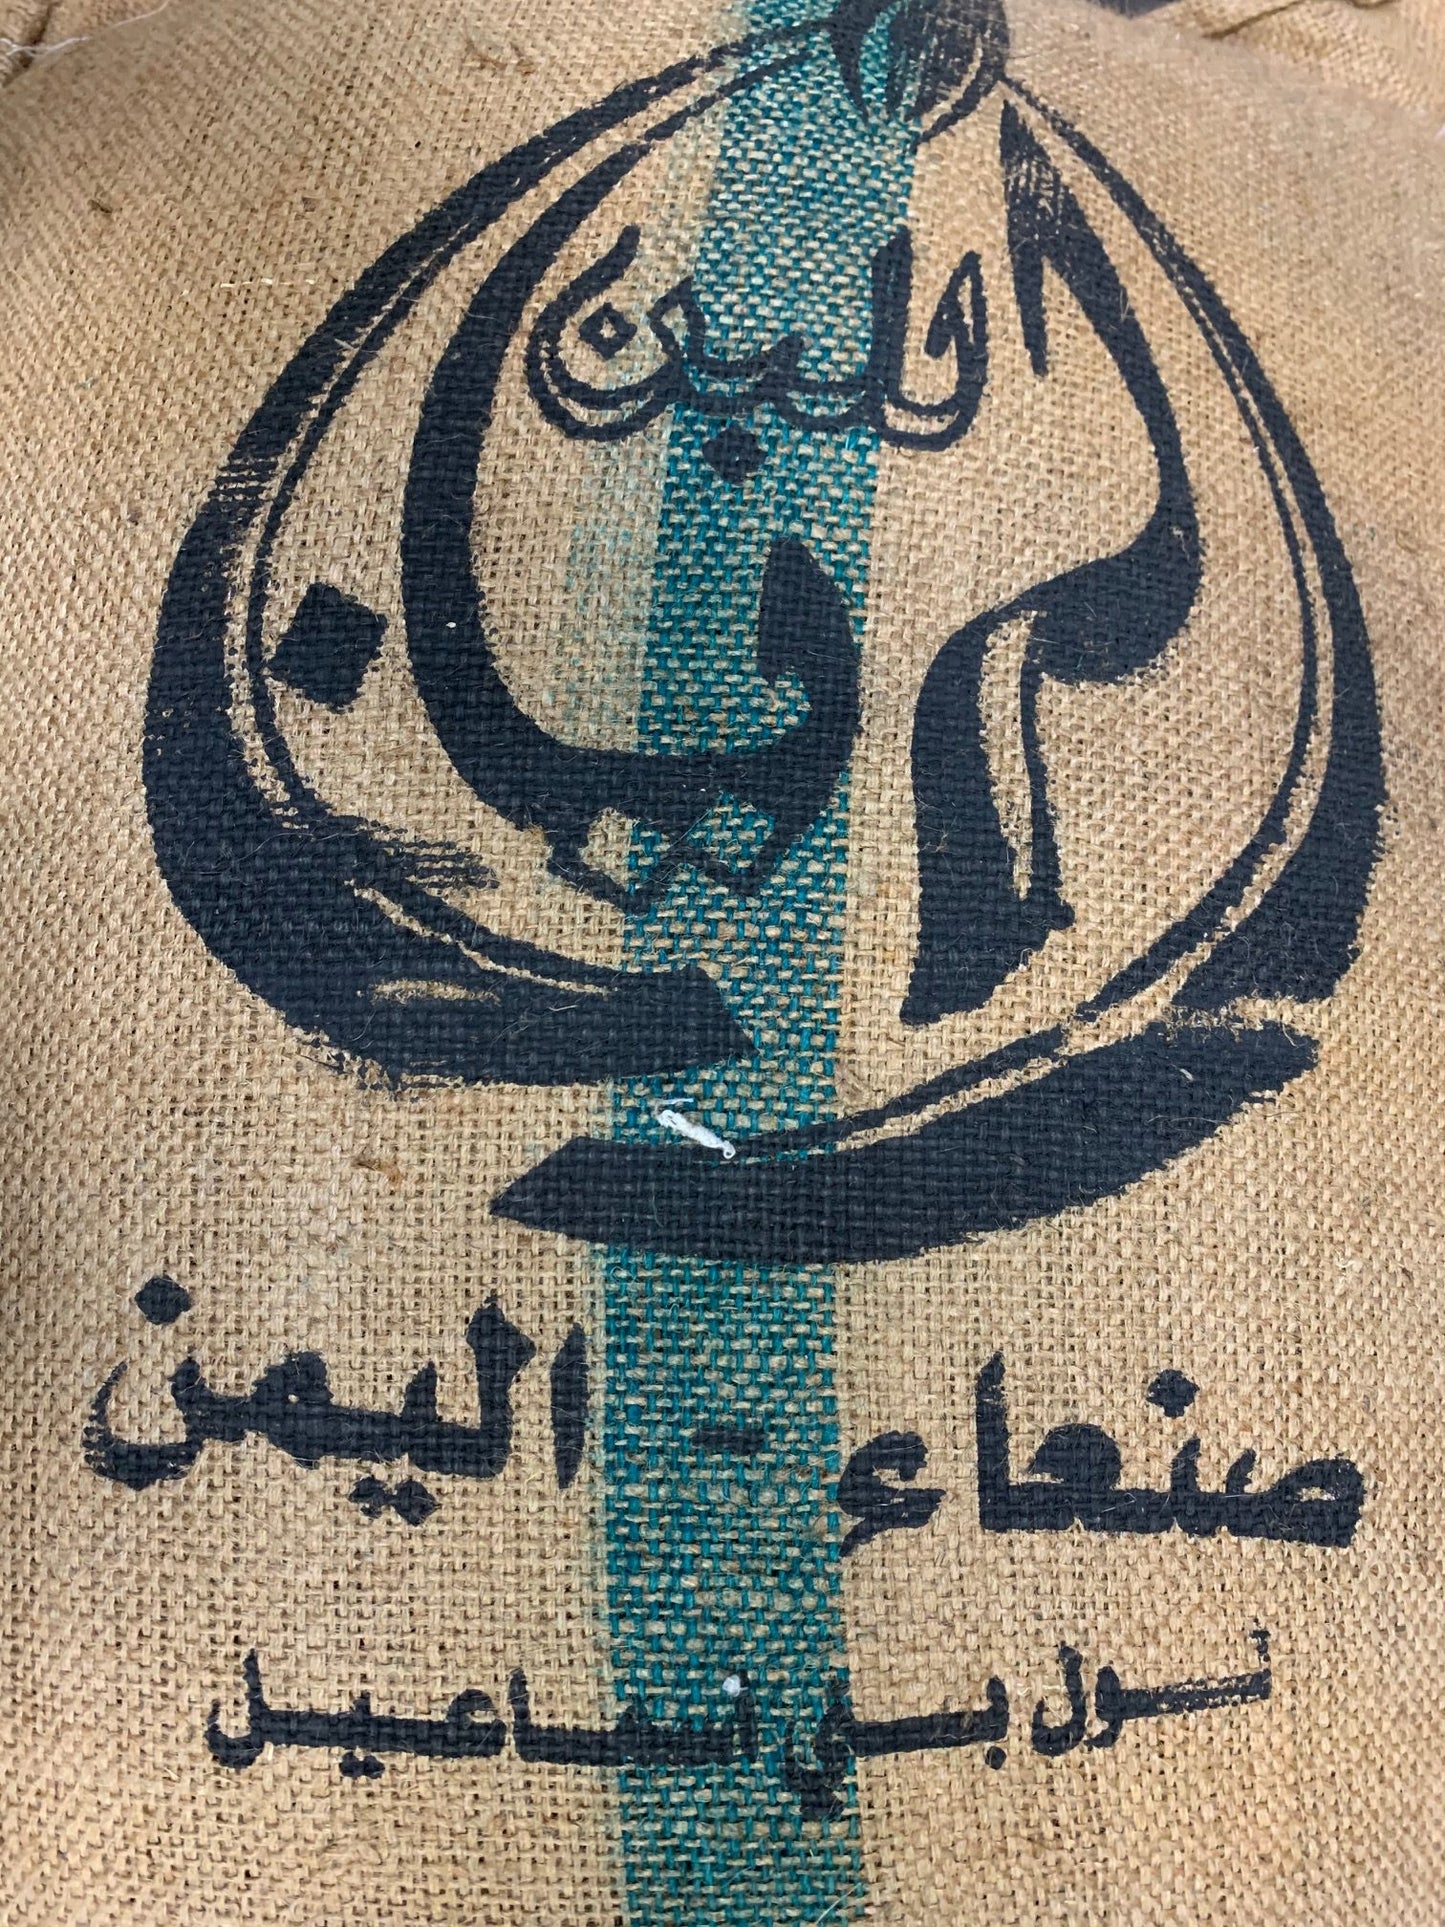 Yemen Mocha coffee bag